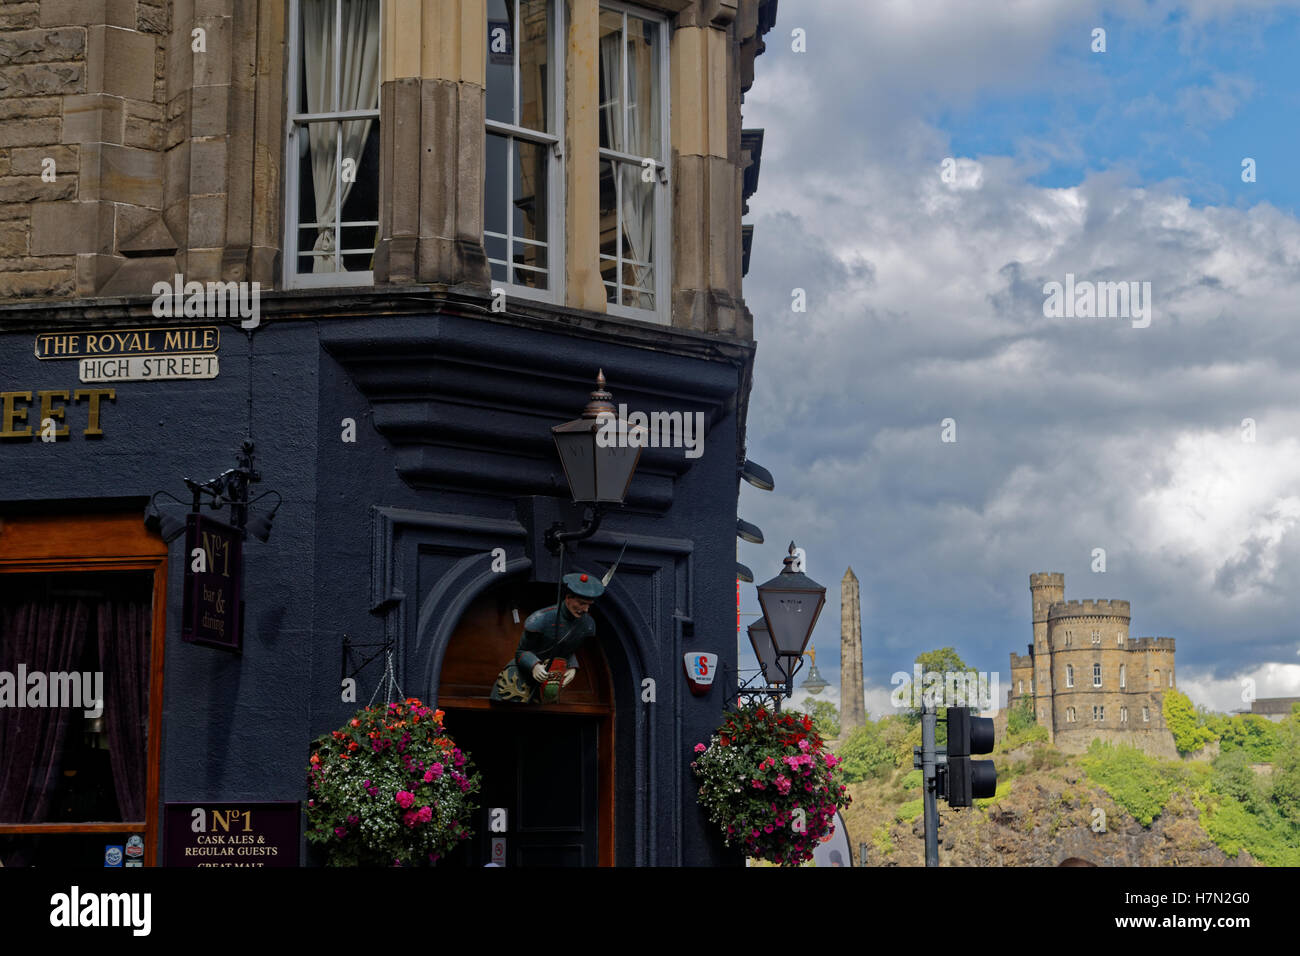 Le pub Royal Mile High street Edimbourg Calton Hill background Banque D'Images